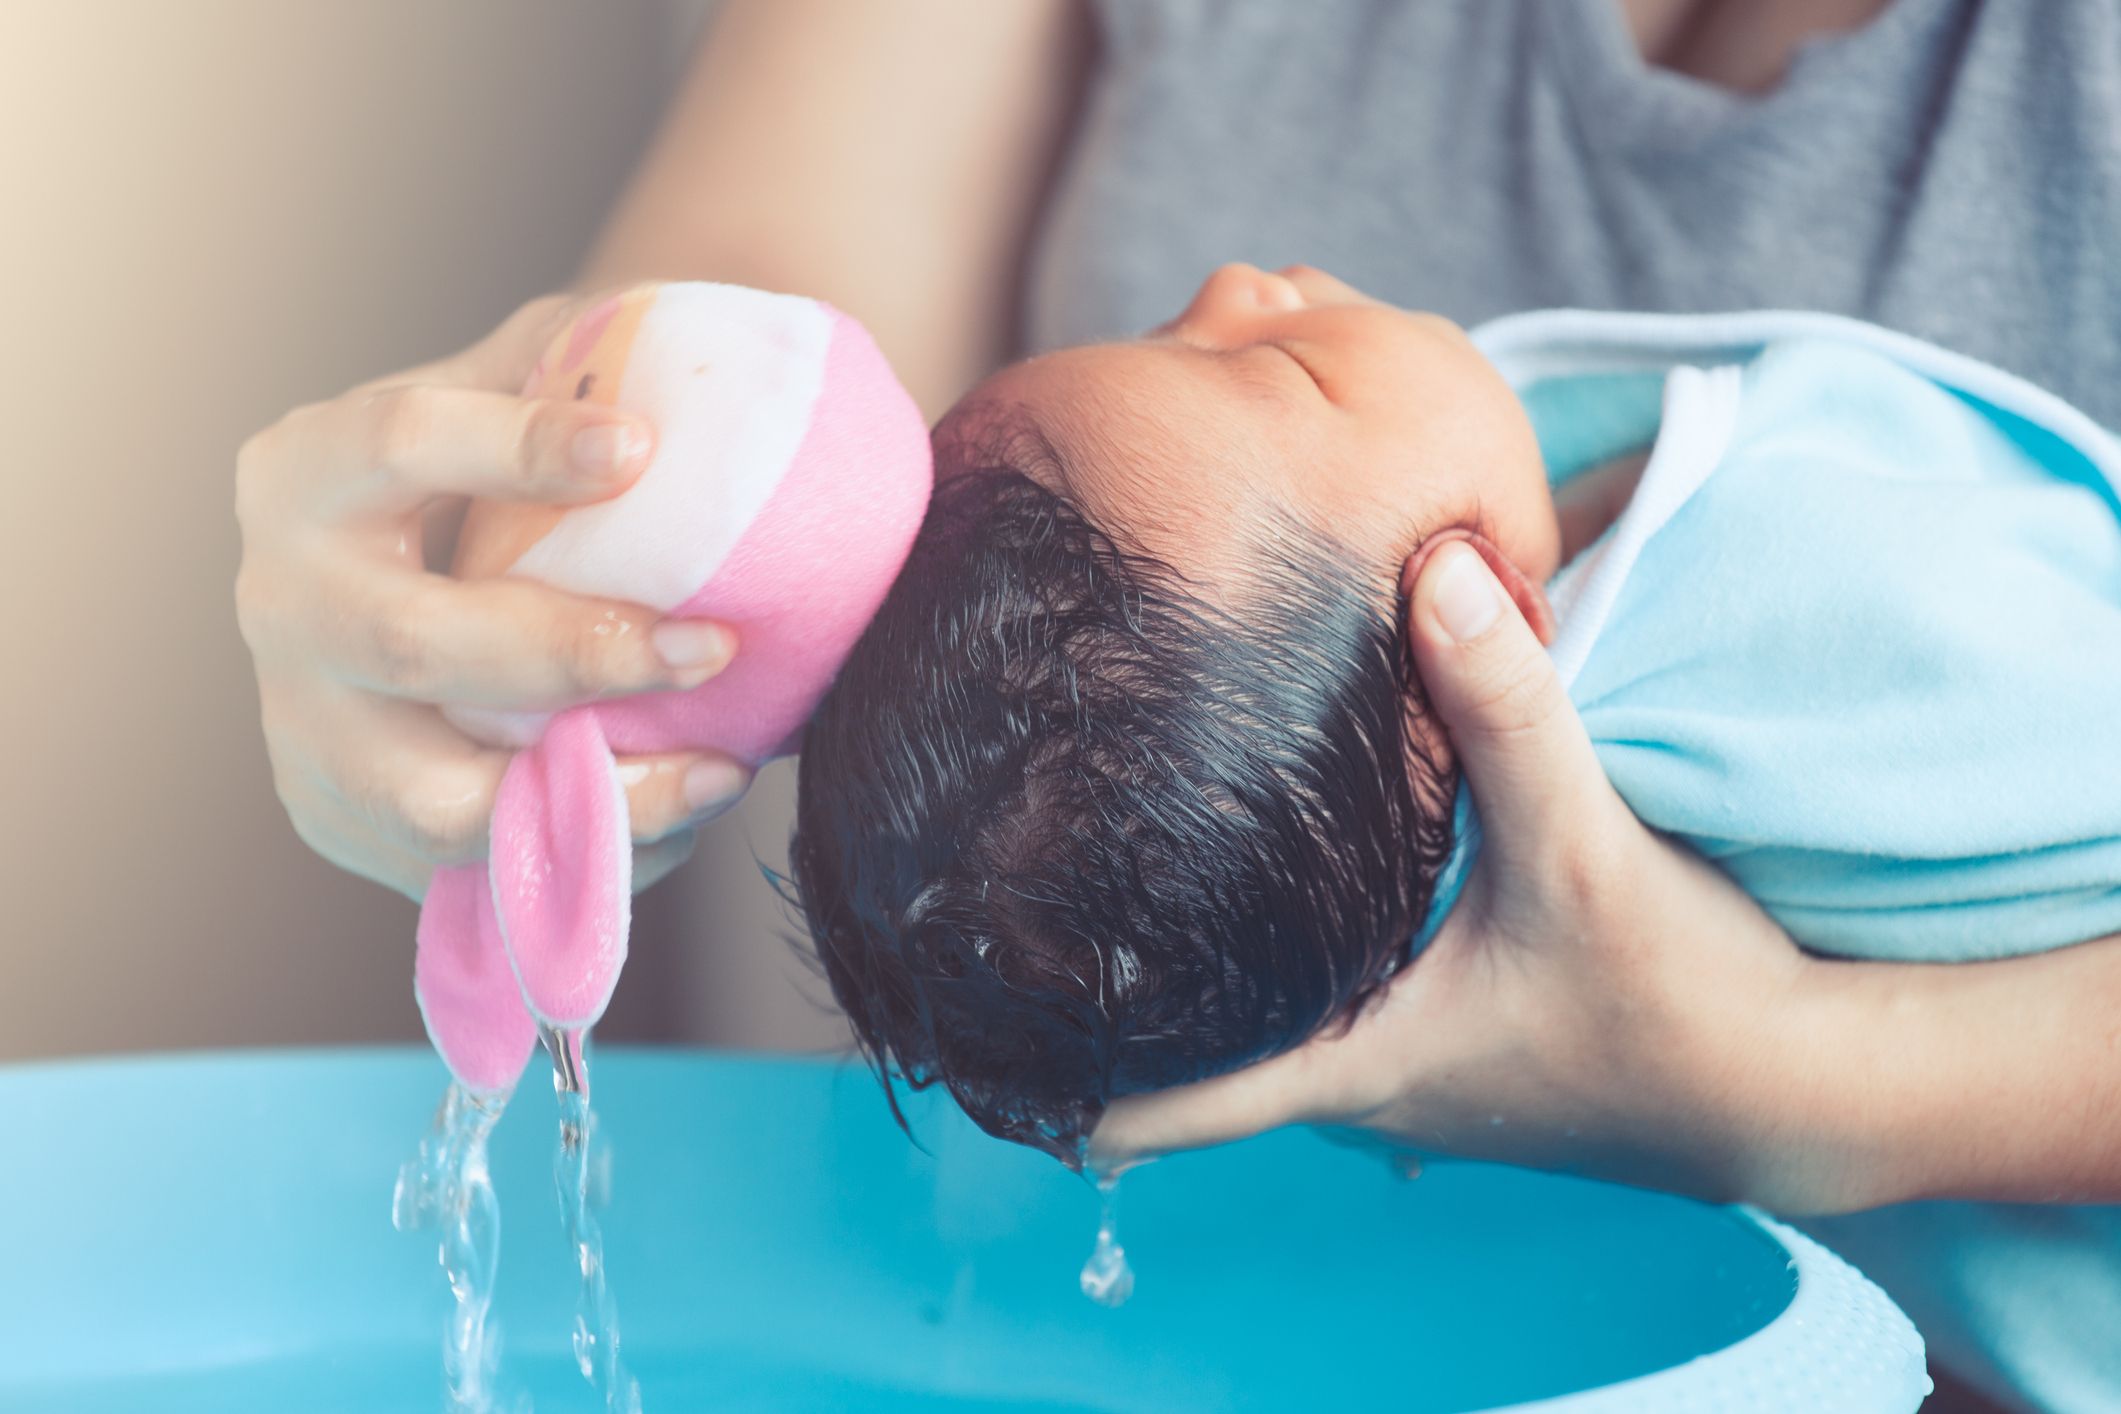 Cómo bañar un bebé recién nacido?